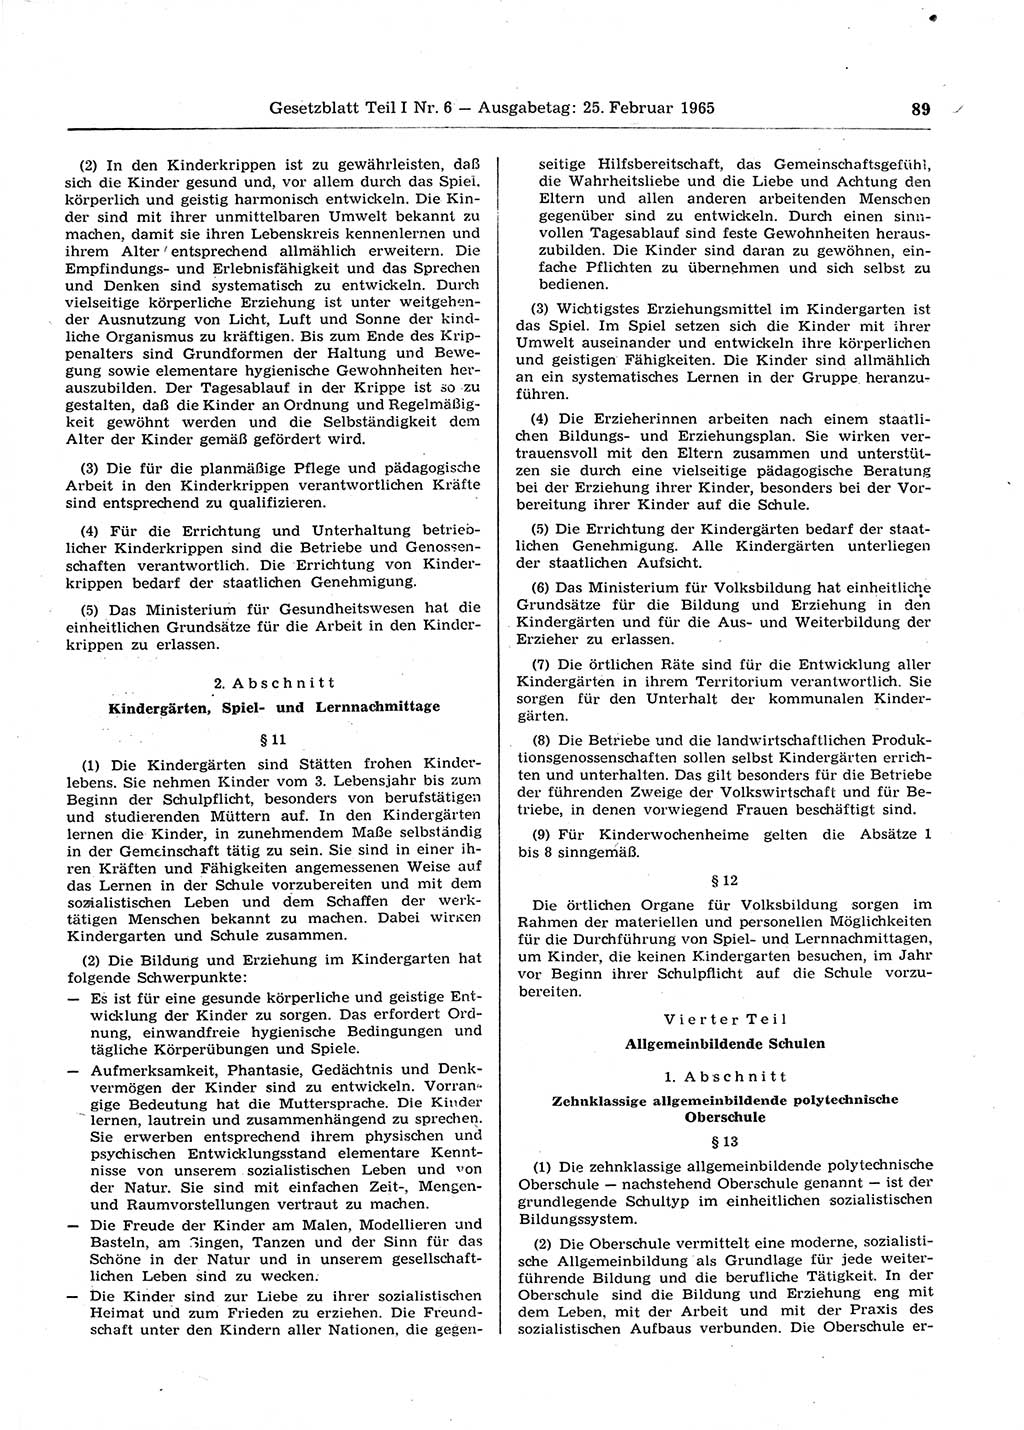 Gesetzblatt (GBl.) der Deutschen Demokratischen Republik (DDR) Teil Ⅰ 1965, Seite 89 (GBl. DDR Ⅰ 1965, S. 89)